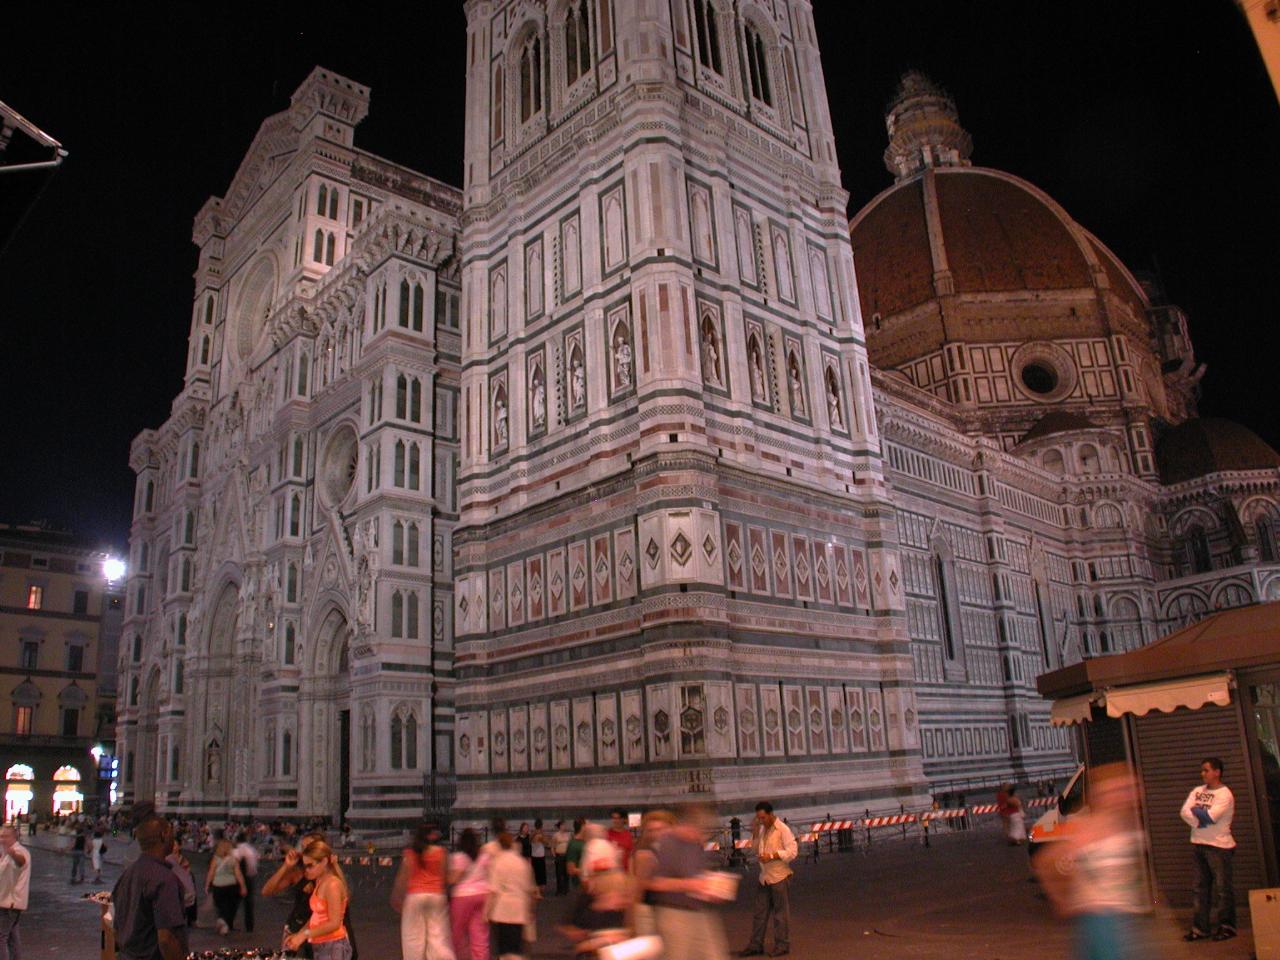 Duomo and Campanile at night